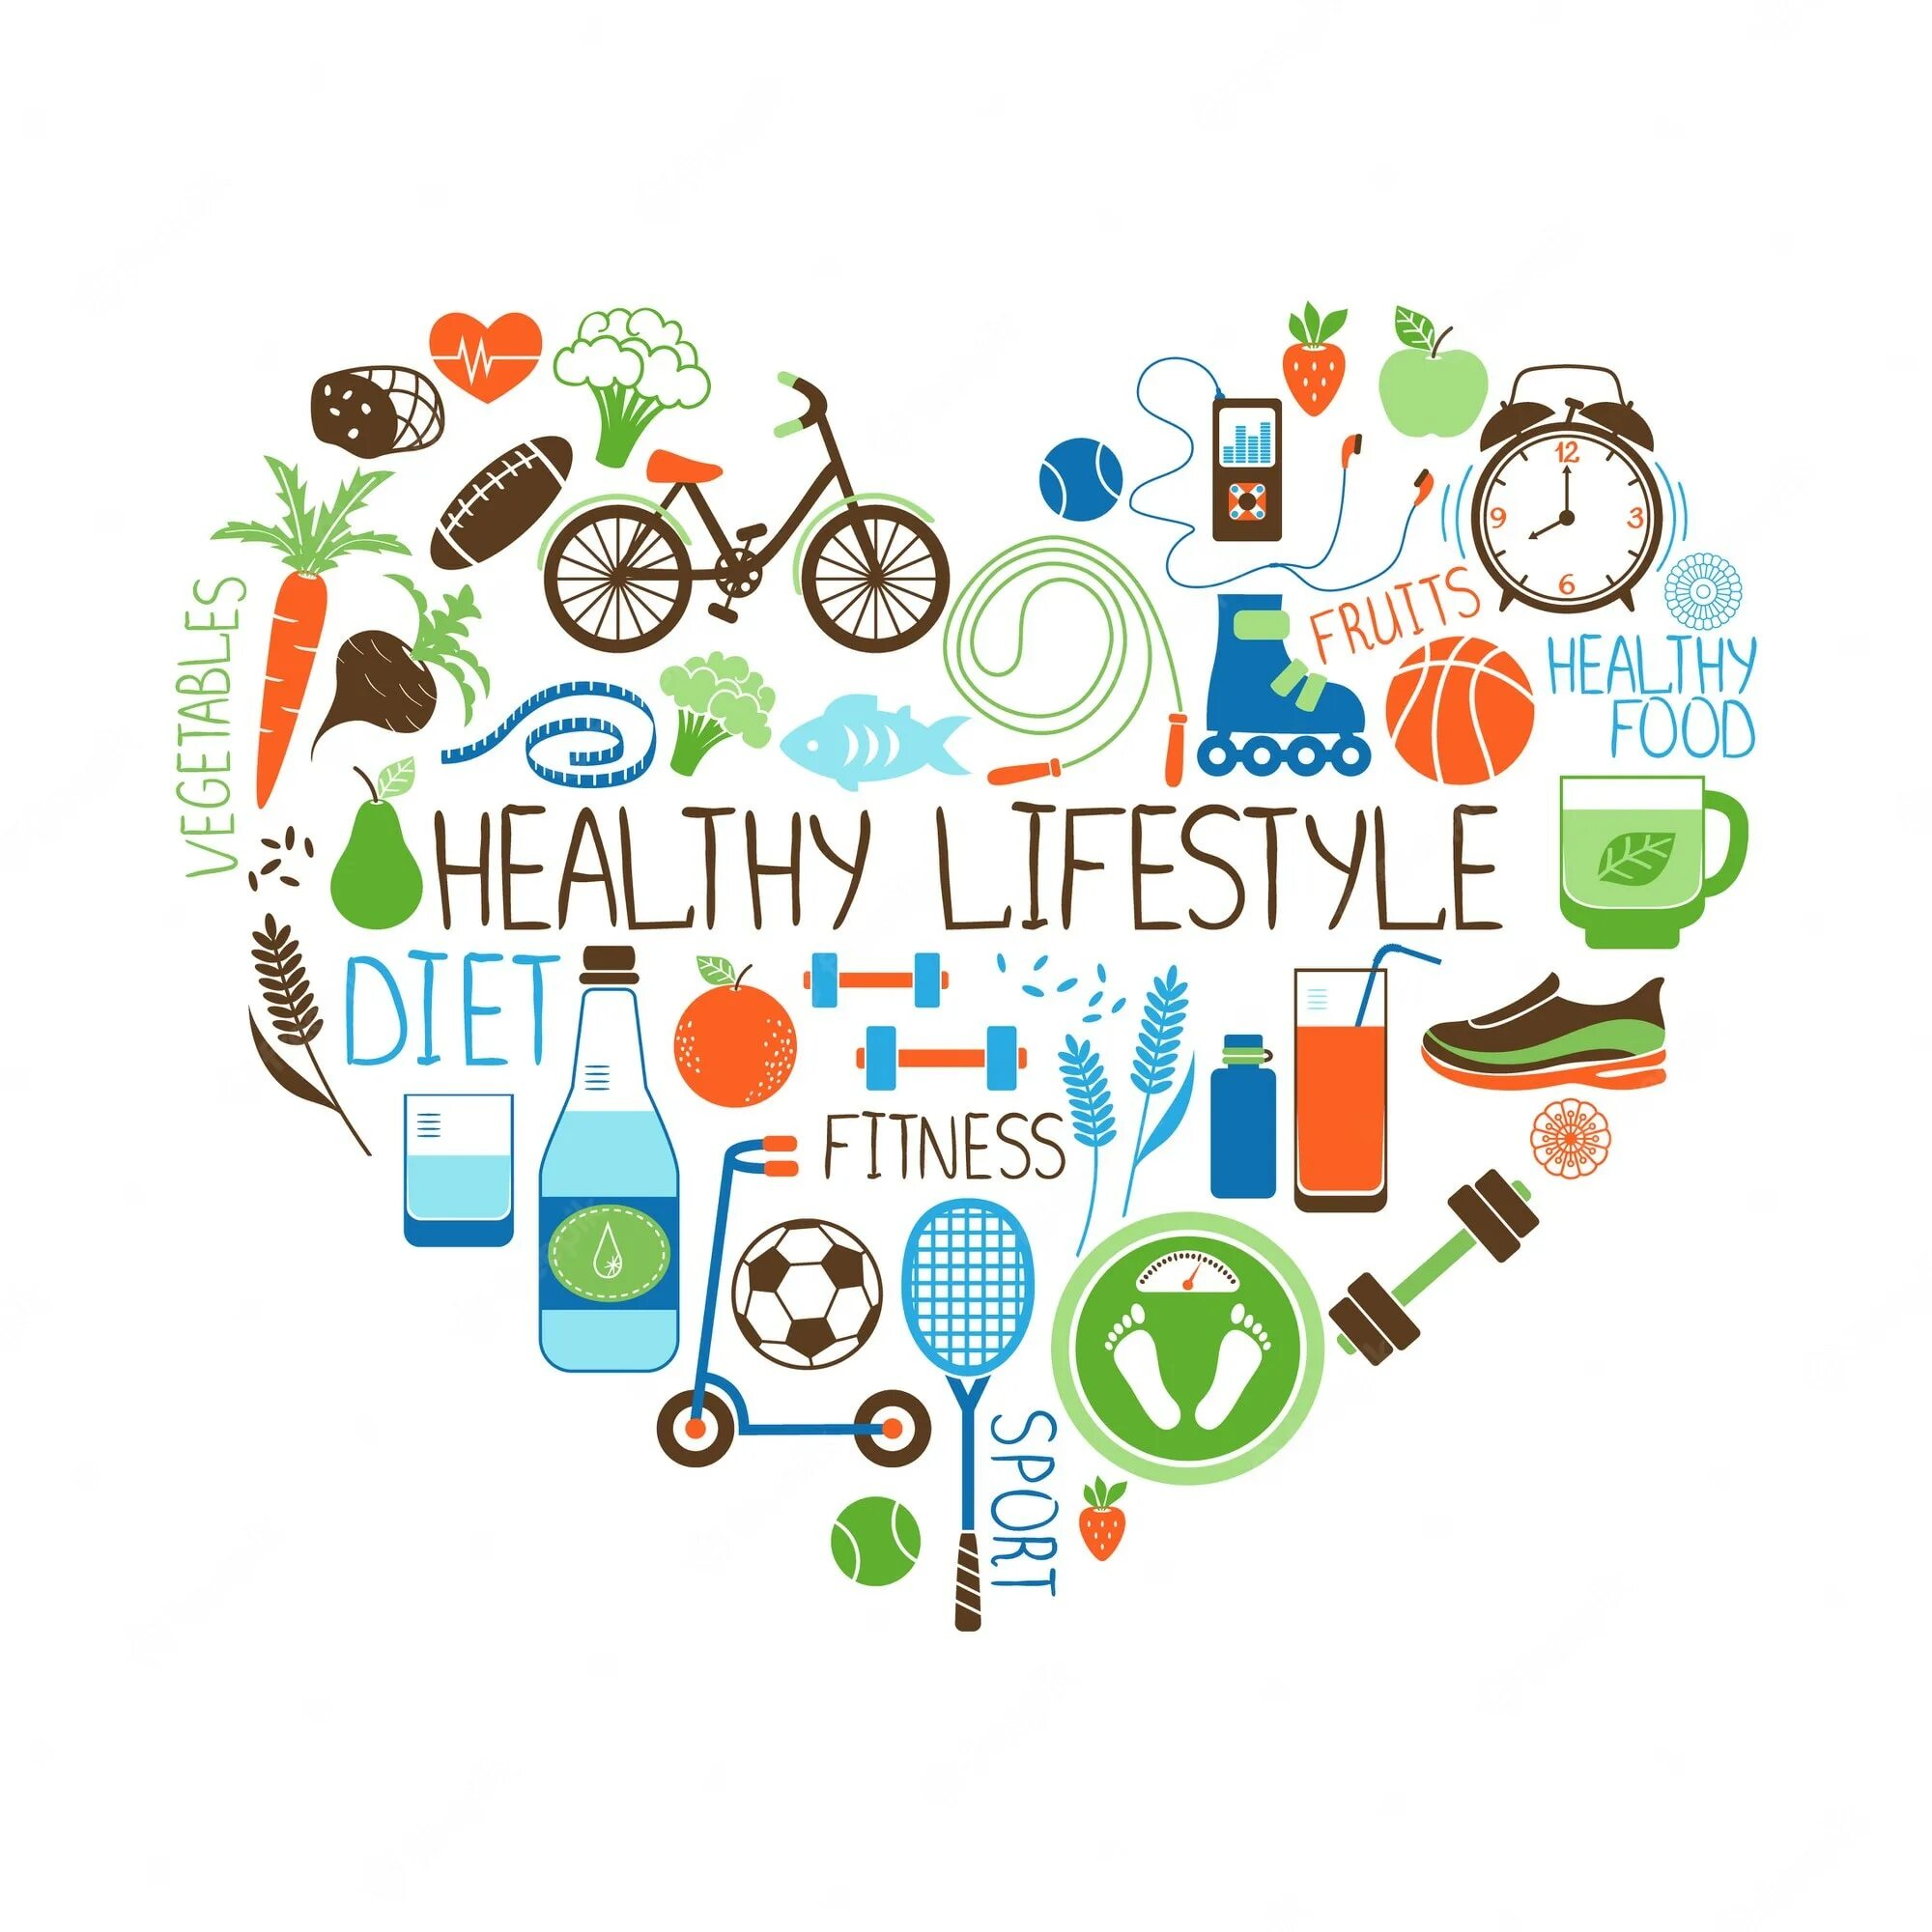 Эксперт здоровой жизни. Здоровый образ жизни. ЗОЖ на английском. Плакат на тему healthy Lifestyle. Здоровый образ жизни картинки.